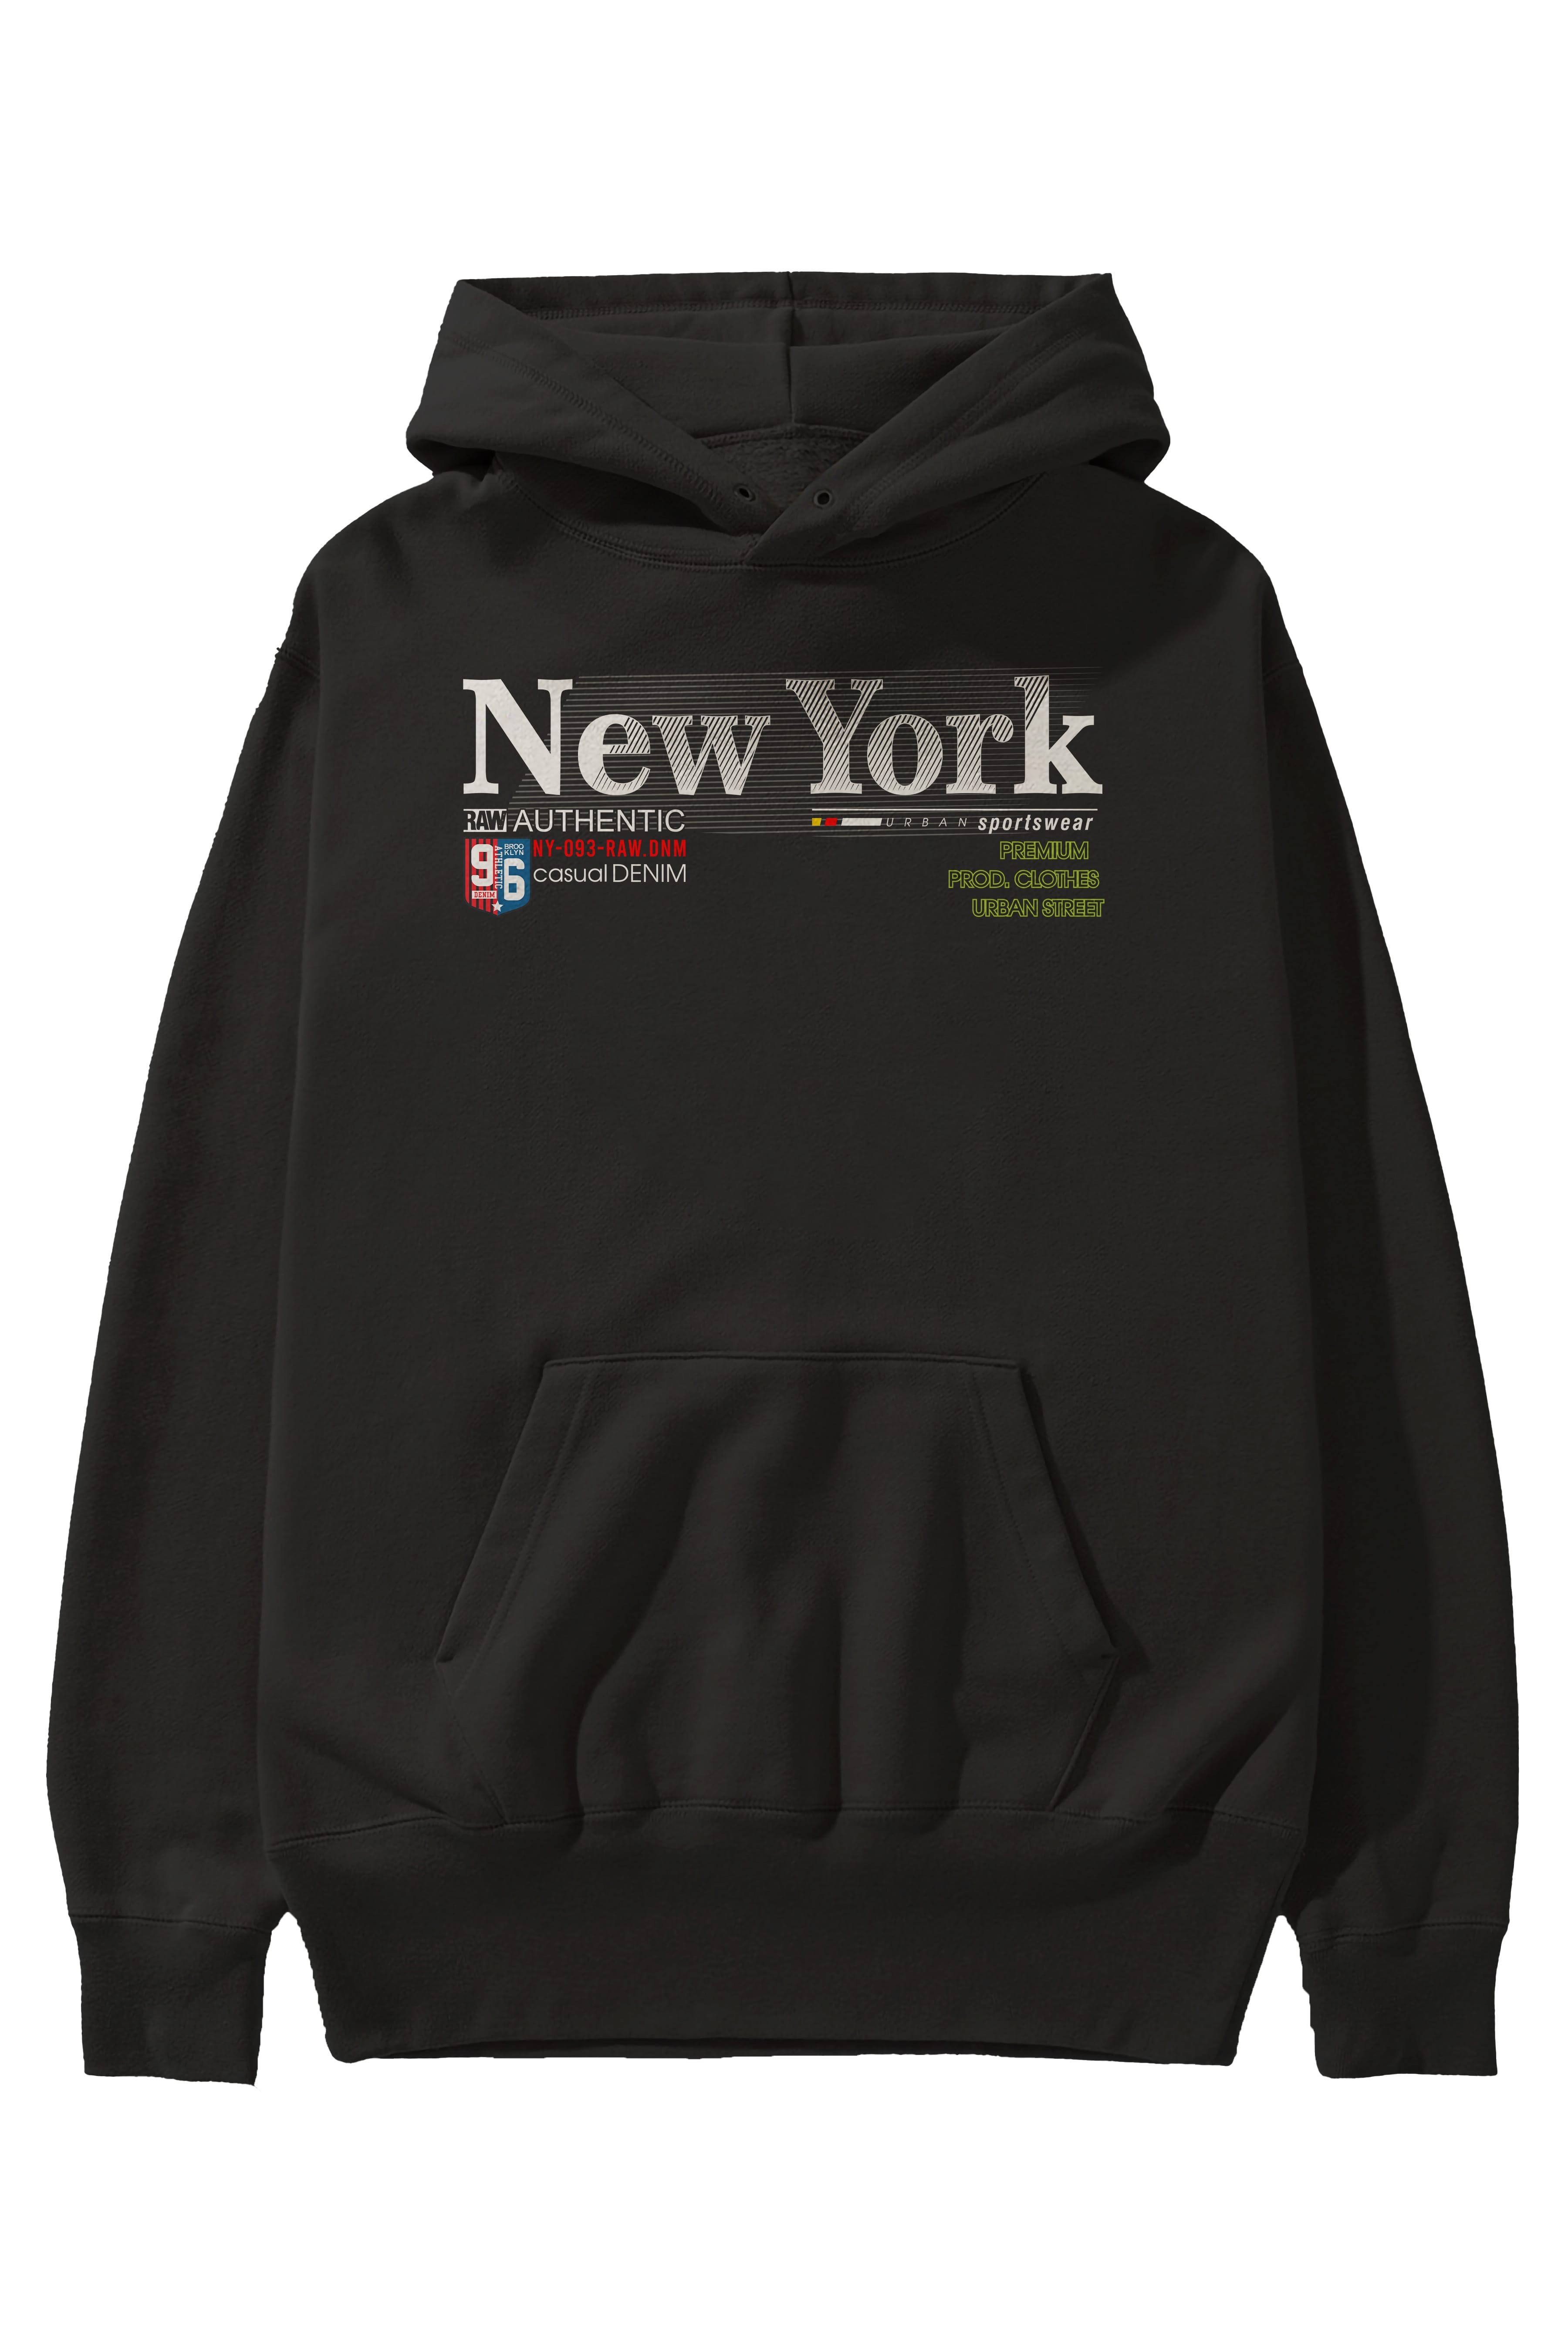 New York 96 Ön Baskılı Oversize Hoodie Kapüşonlu Sweatshirt Erkek Kadın Unisex